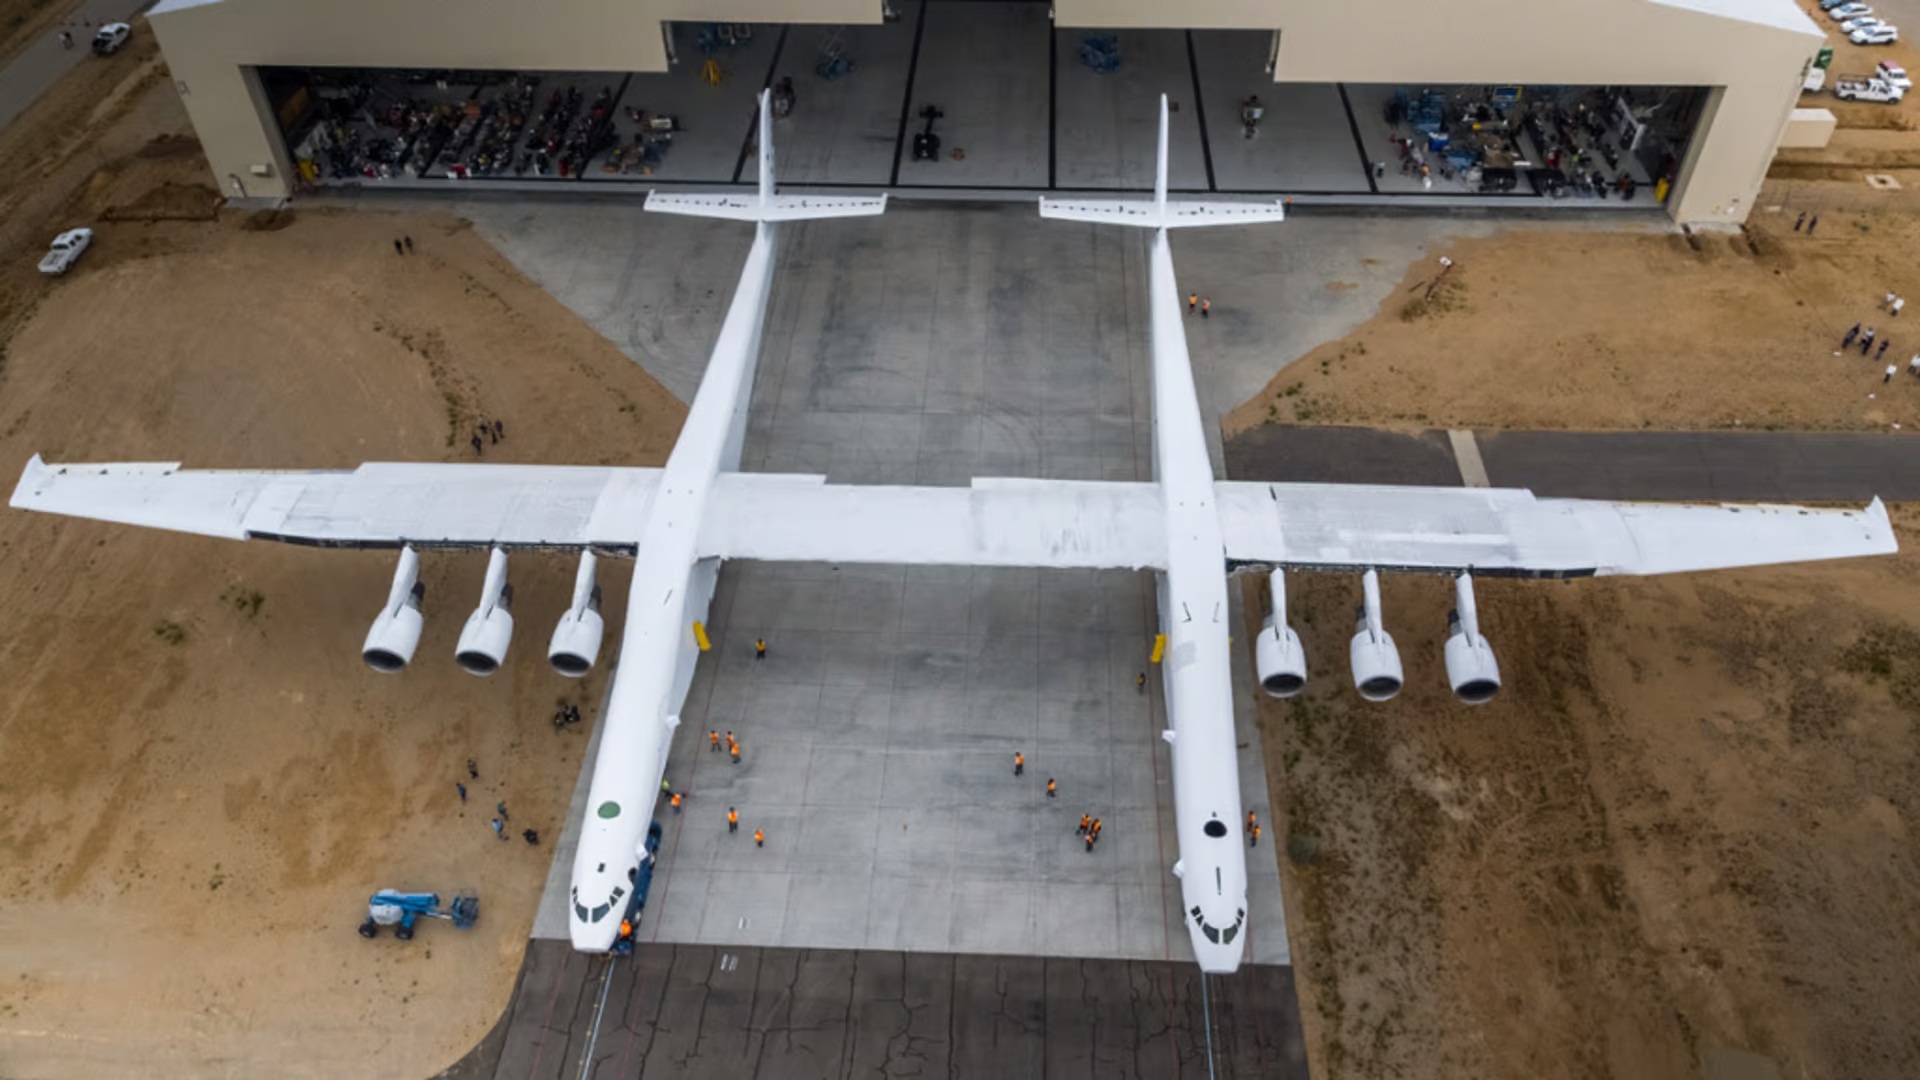 Nosný letoun Roc má největší rozpětí křídel ze všech letounů na světě. Kredit: Stratolaunch.